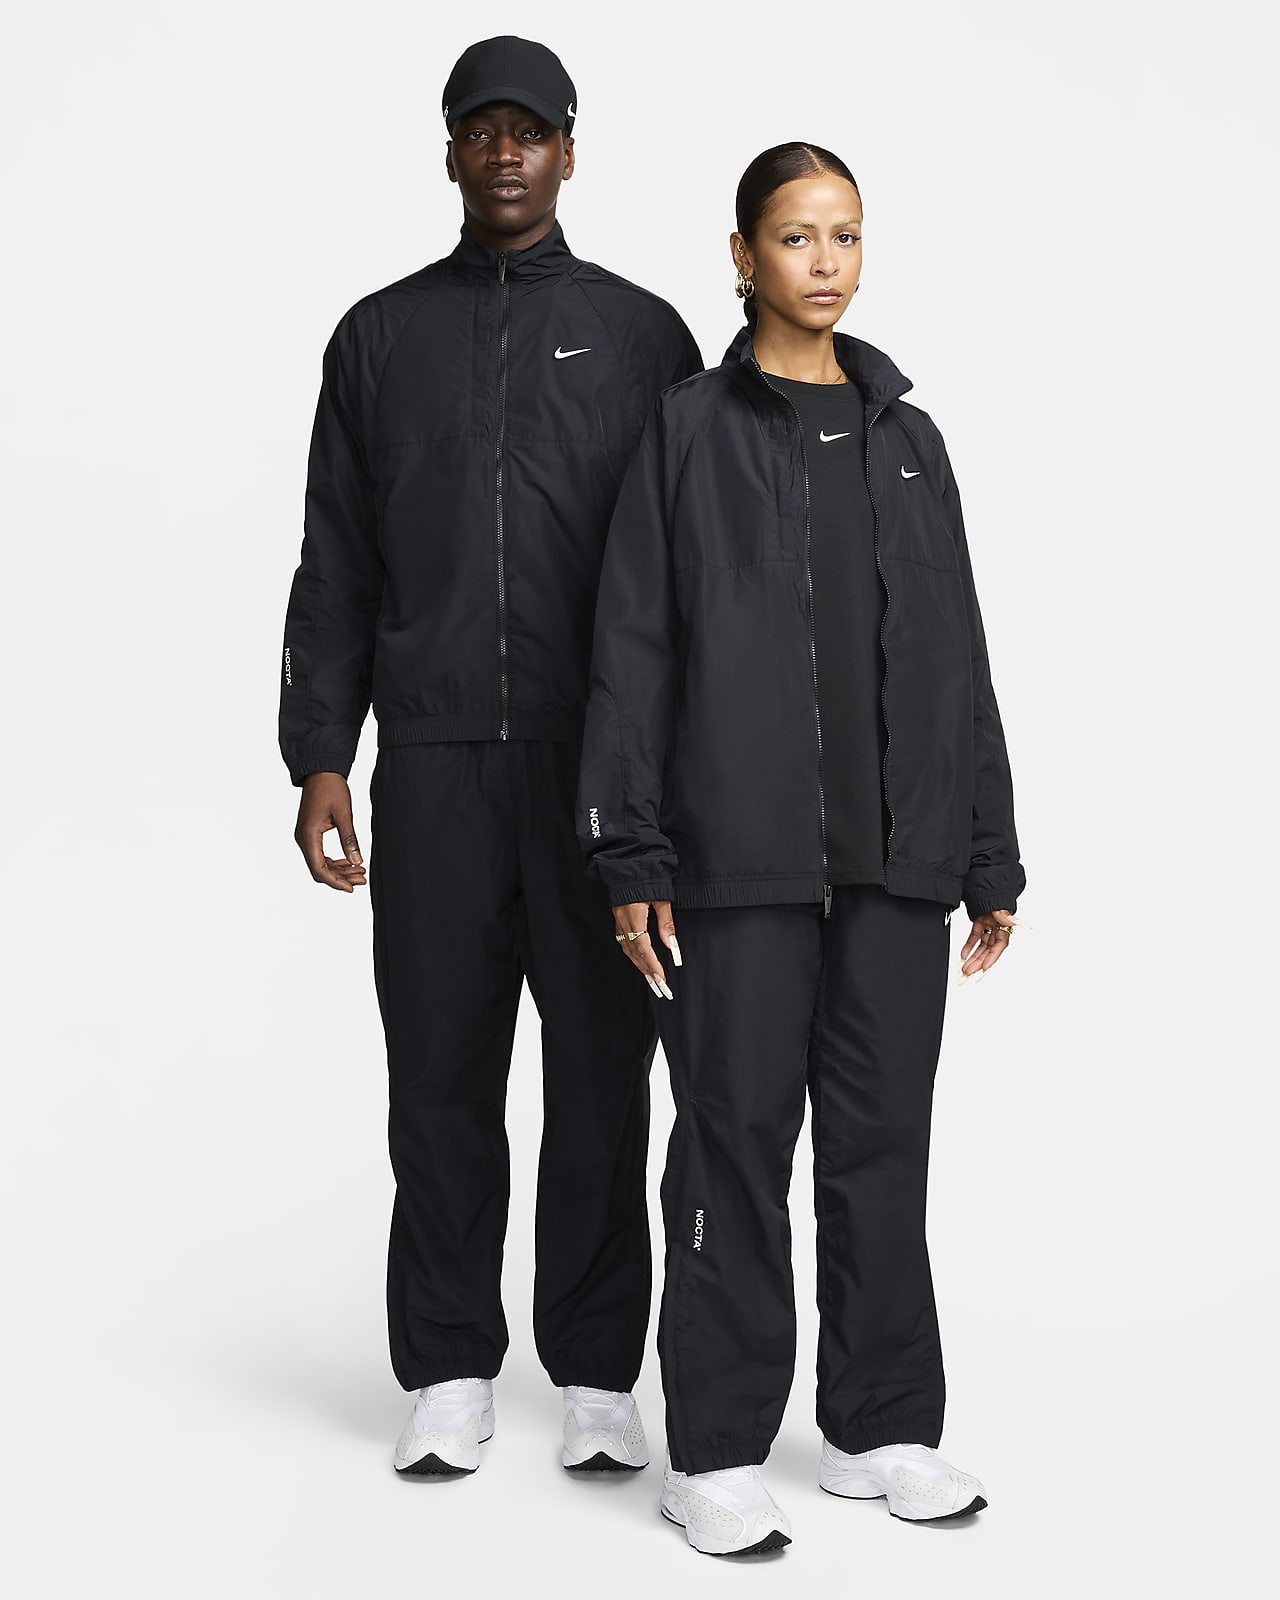 NOCTA Nylon Tracksuit Jacket. Nike SG